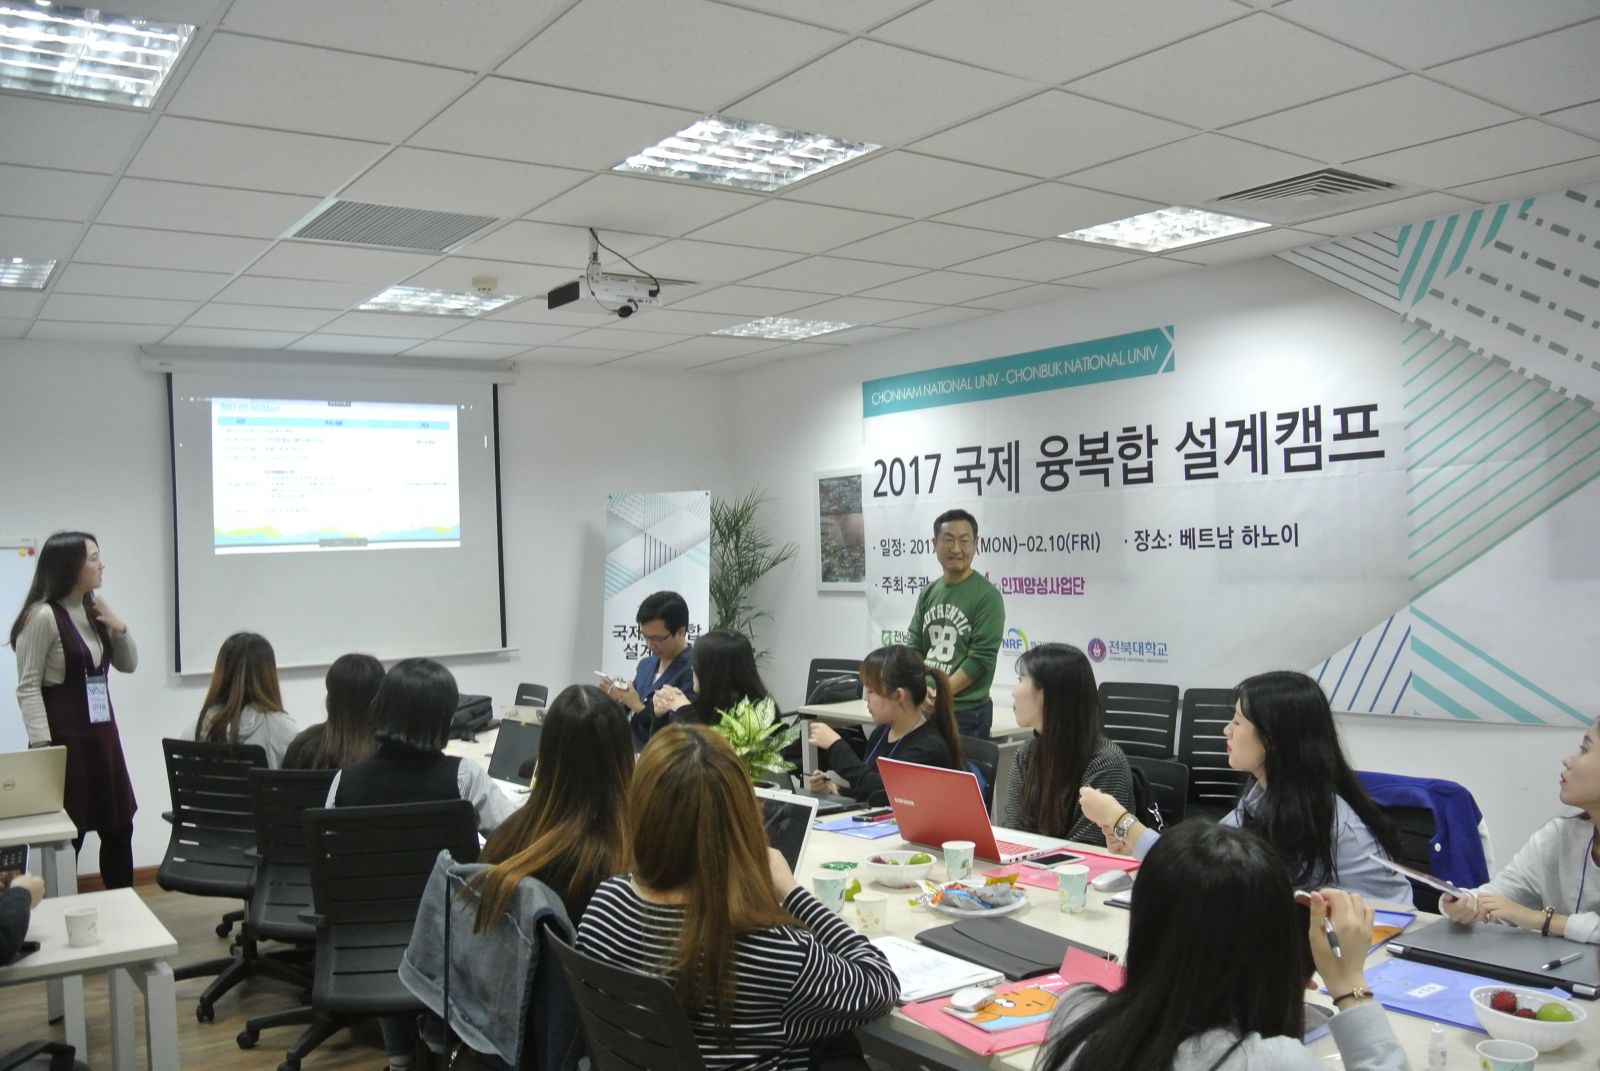 Du học Hàn Quốc tại trường đại học Chonbuk: Khỏi lo Visa